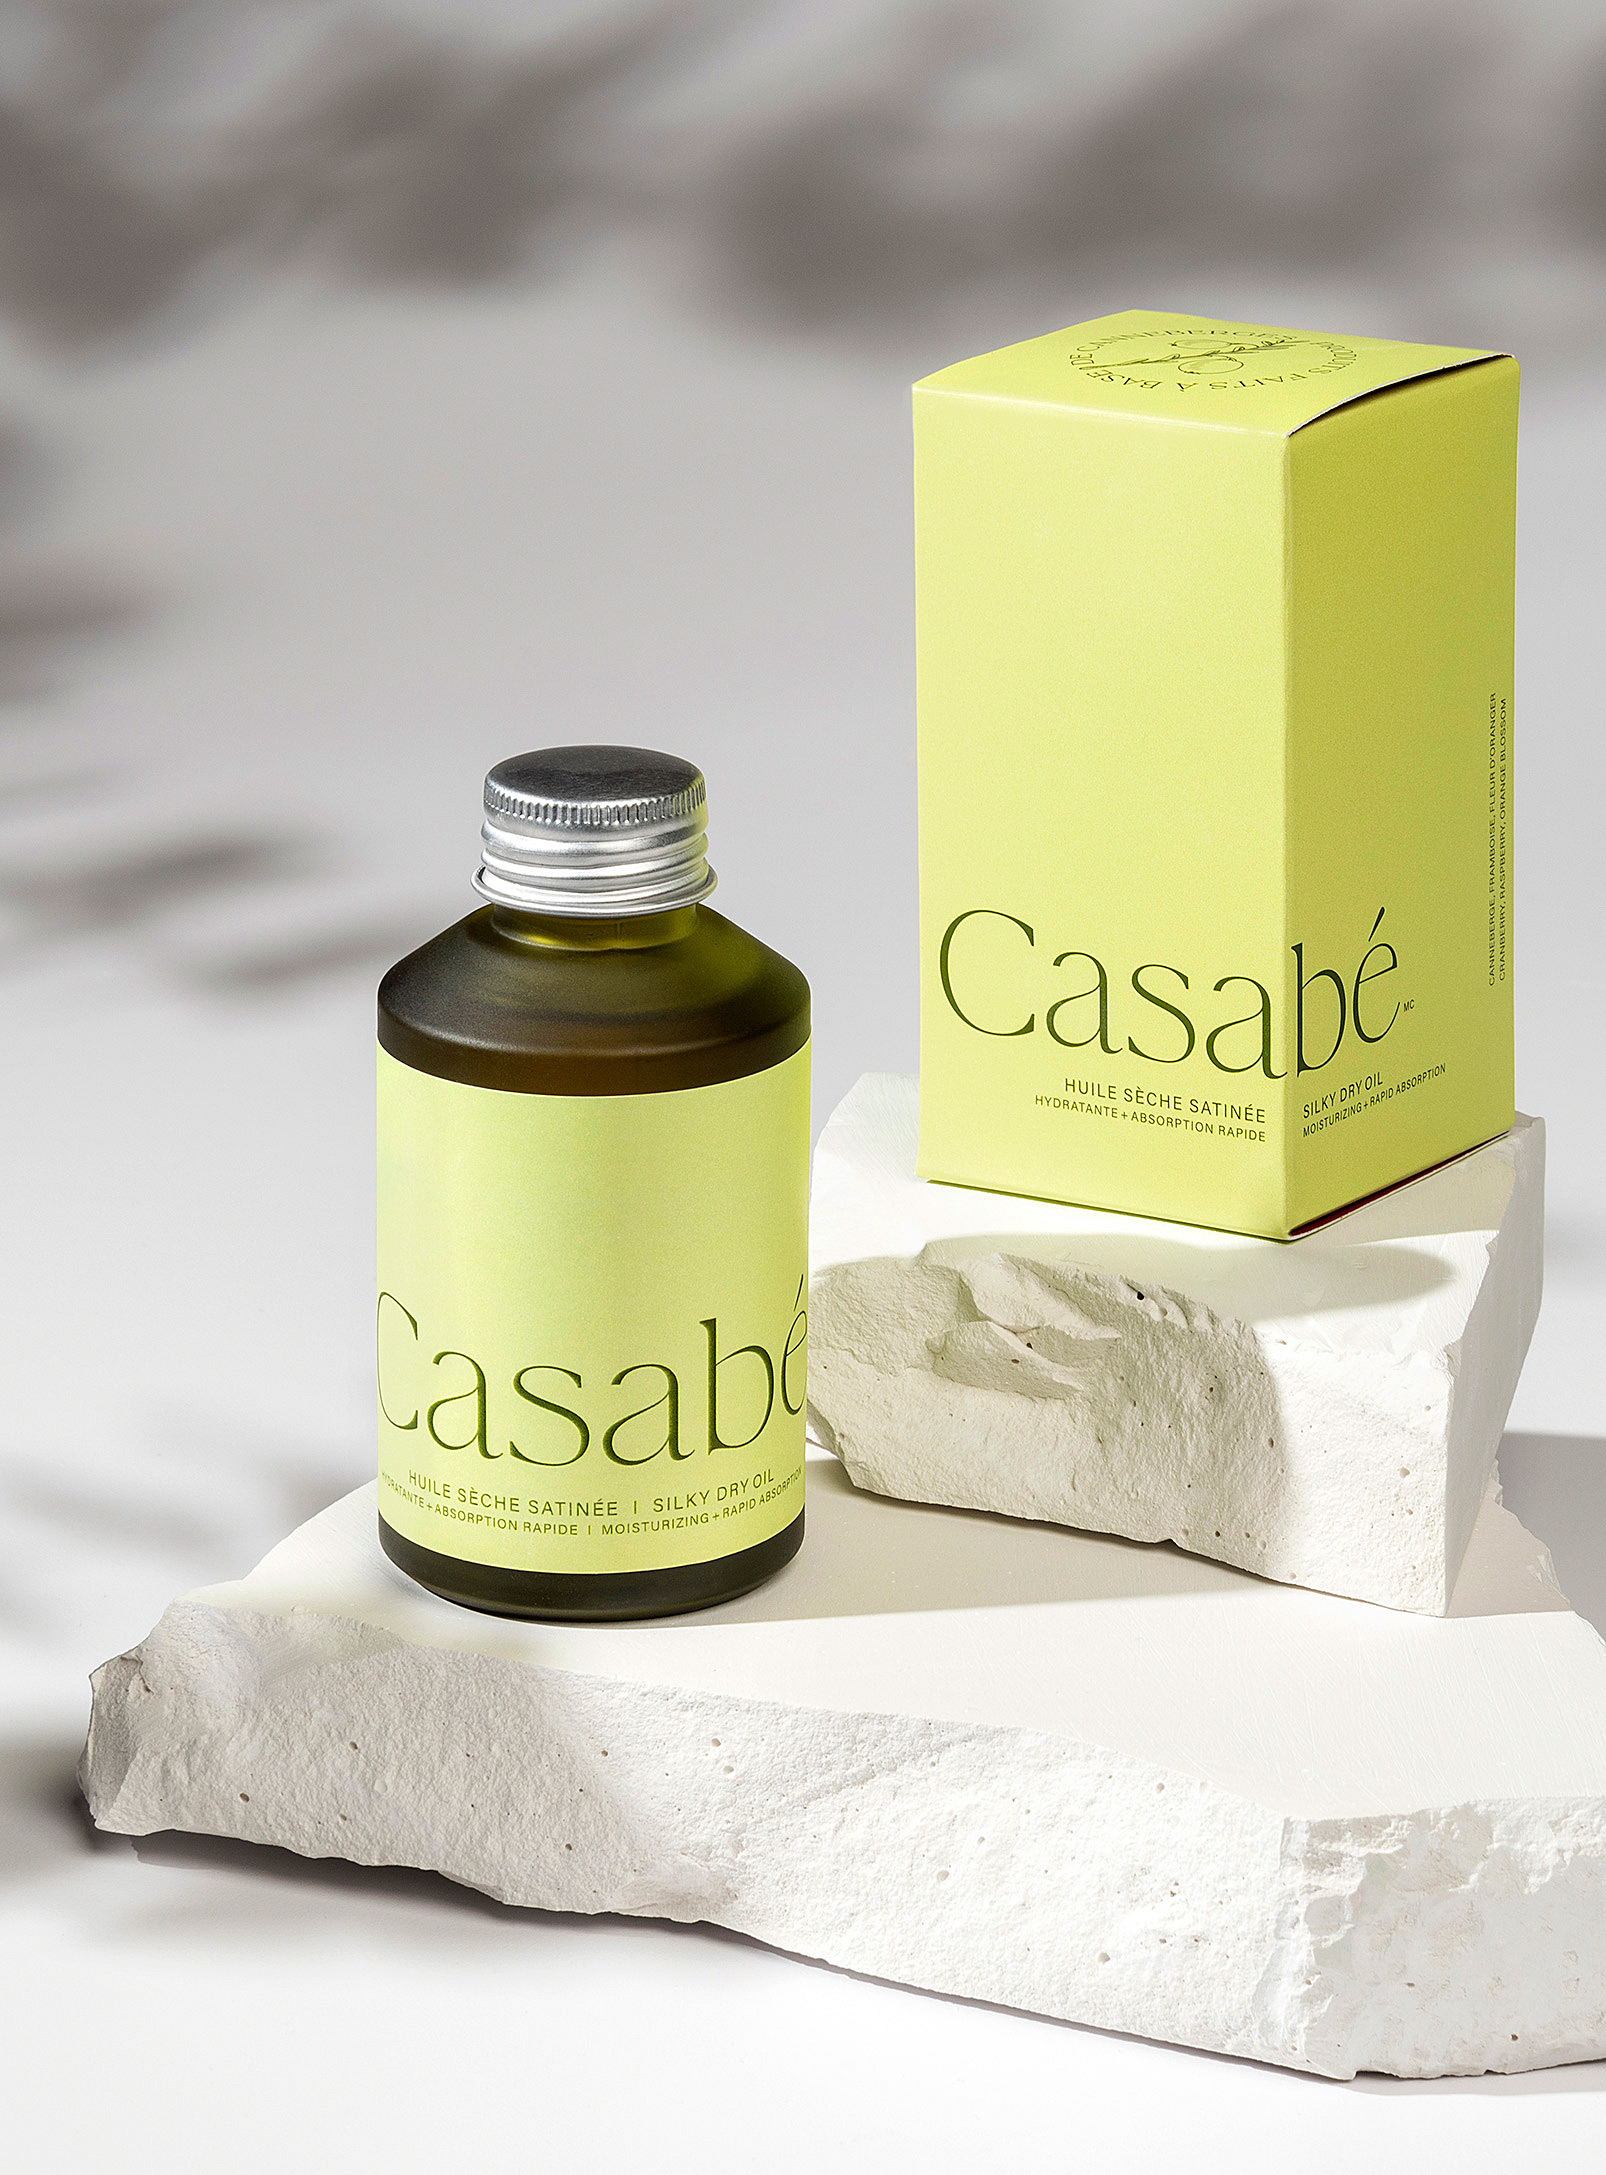 Casabé - Satin dry oil